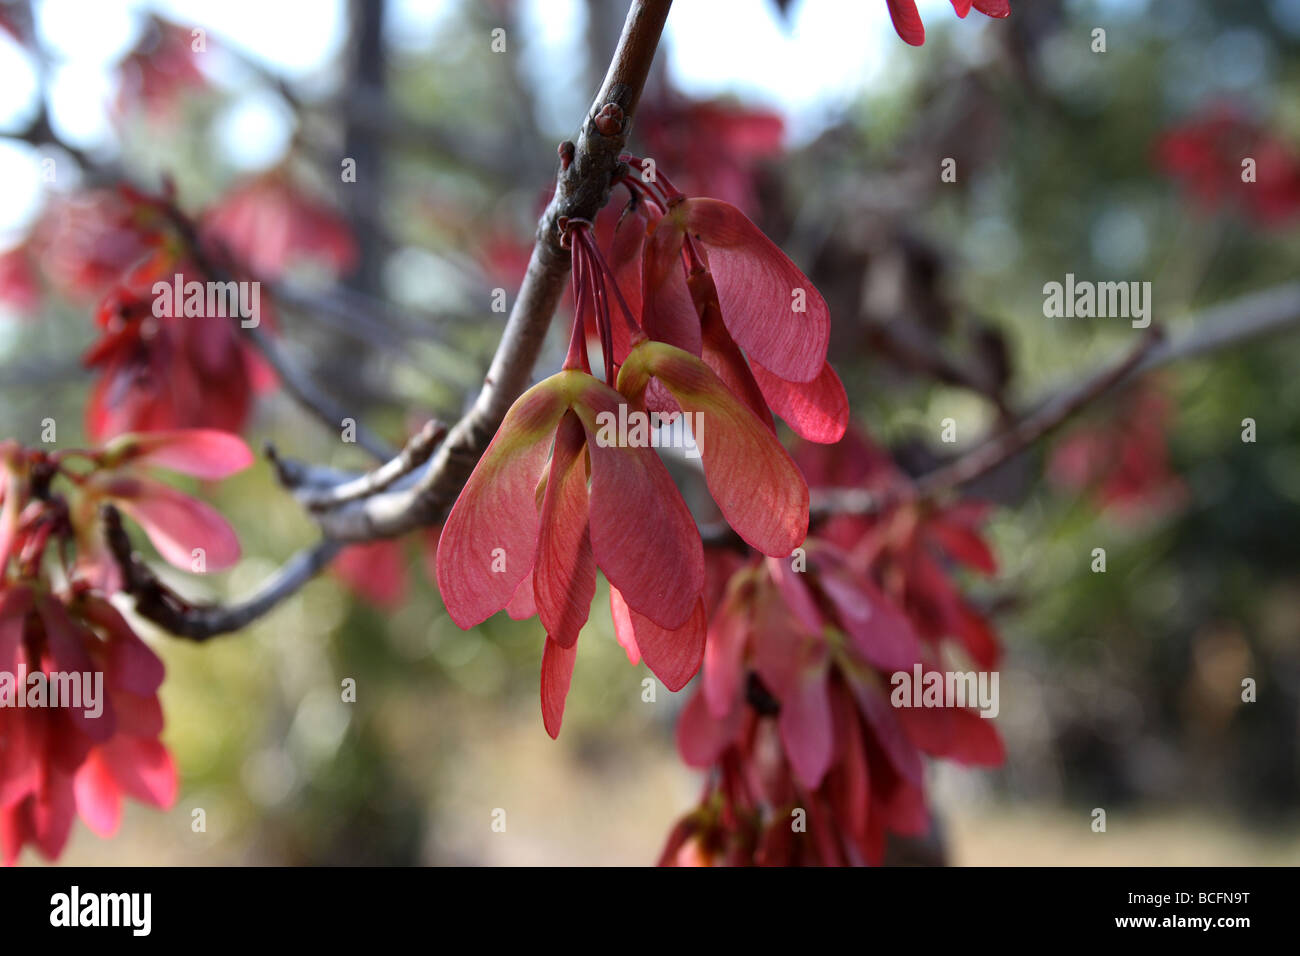 Rot-Ahorn (G. Lumis) Fruchtreife - Ahorn-Tasten (Samaras), in Büscheln auf langen Stielen, Ende Mai oder Anfang Juni. Stockfoto